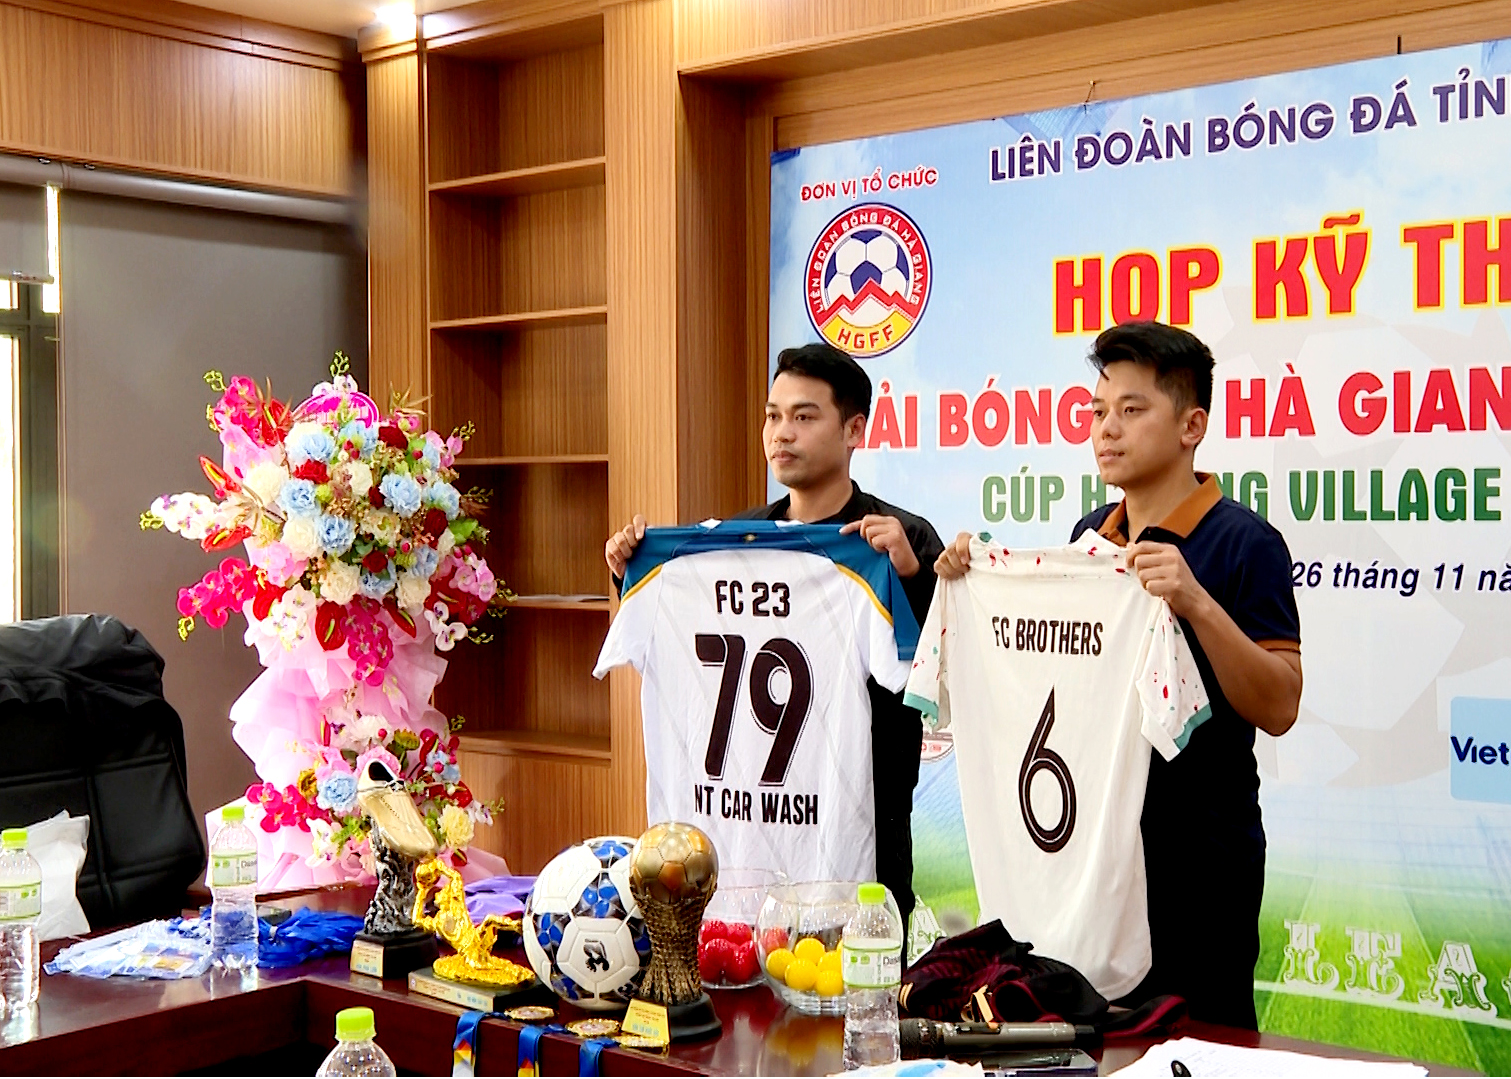 Họp kỹ thuật Giải bóng đá Hà Giang League tranh Cúp HMong Village – HGLS6 năm 2023